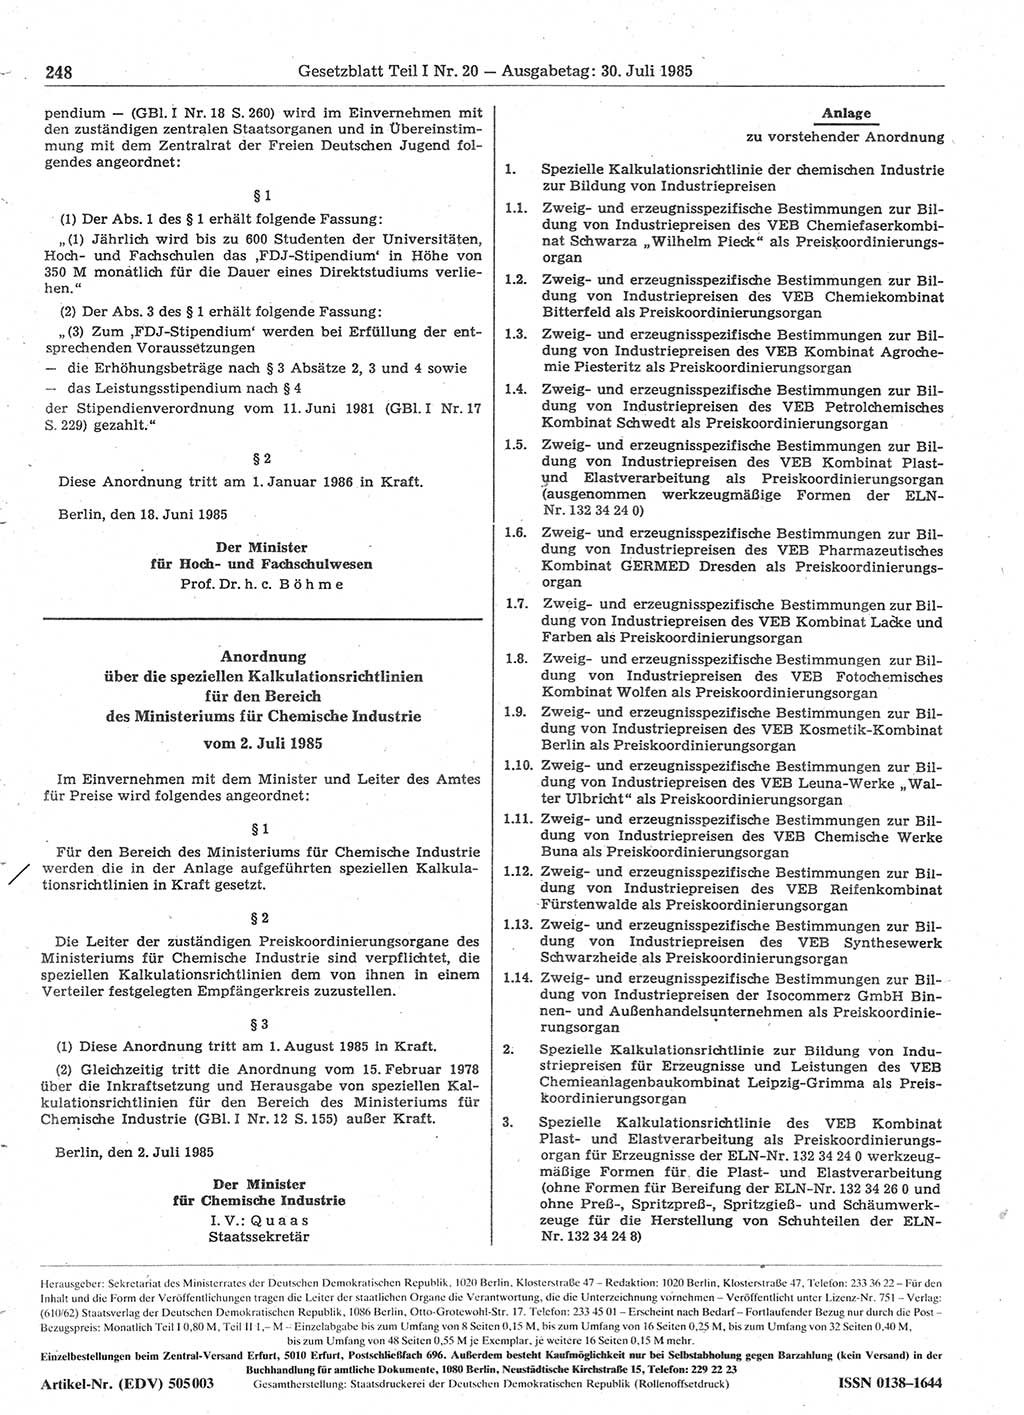 Gesetzblatt (GBl.) der Deutschen Demokratischen Republik (DDR) Teil Ⅰ 1985, Seite 248 (GBl. DDR Ⅰ 1985, S. 248)